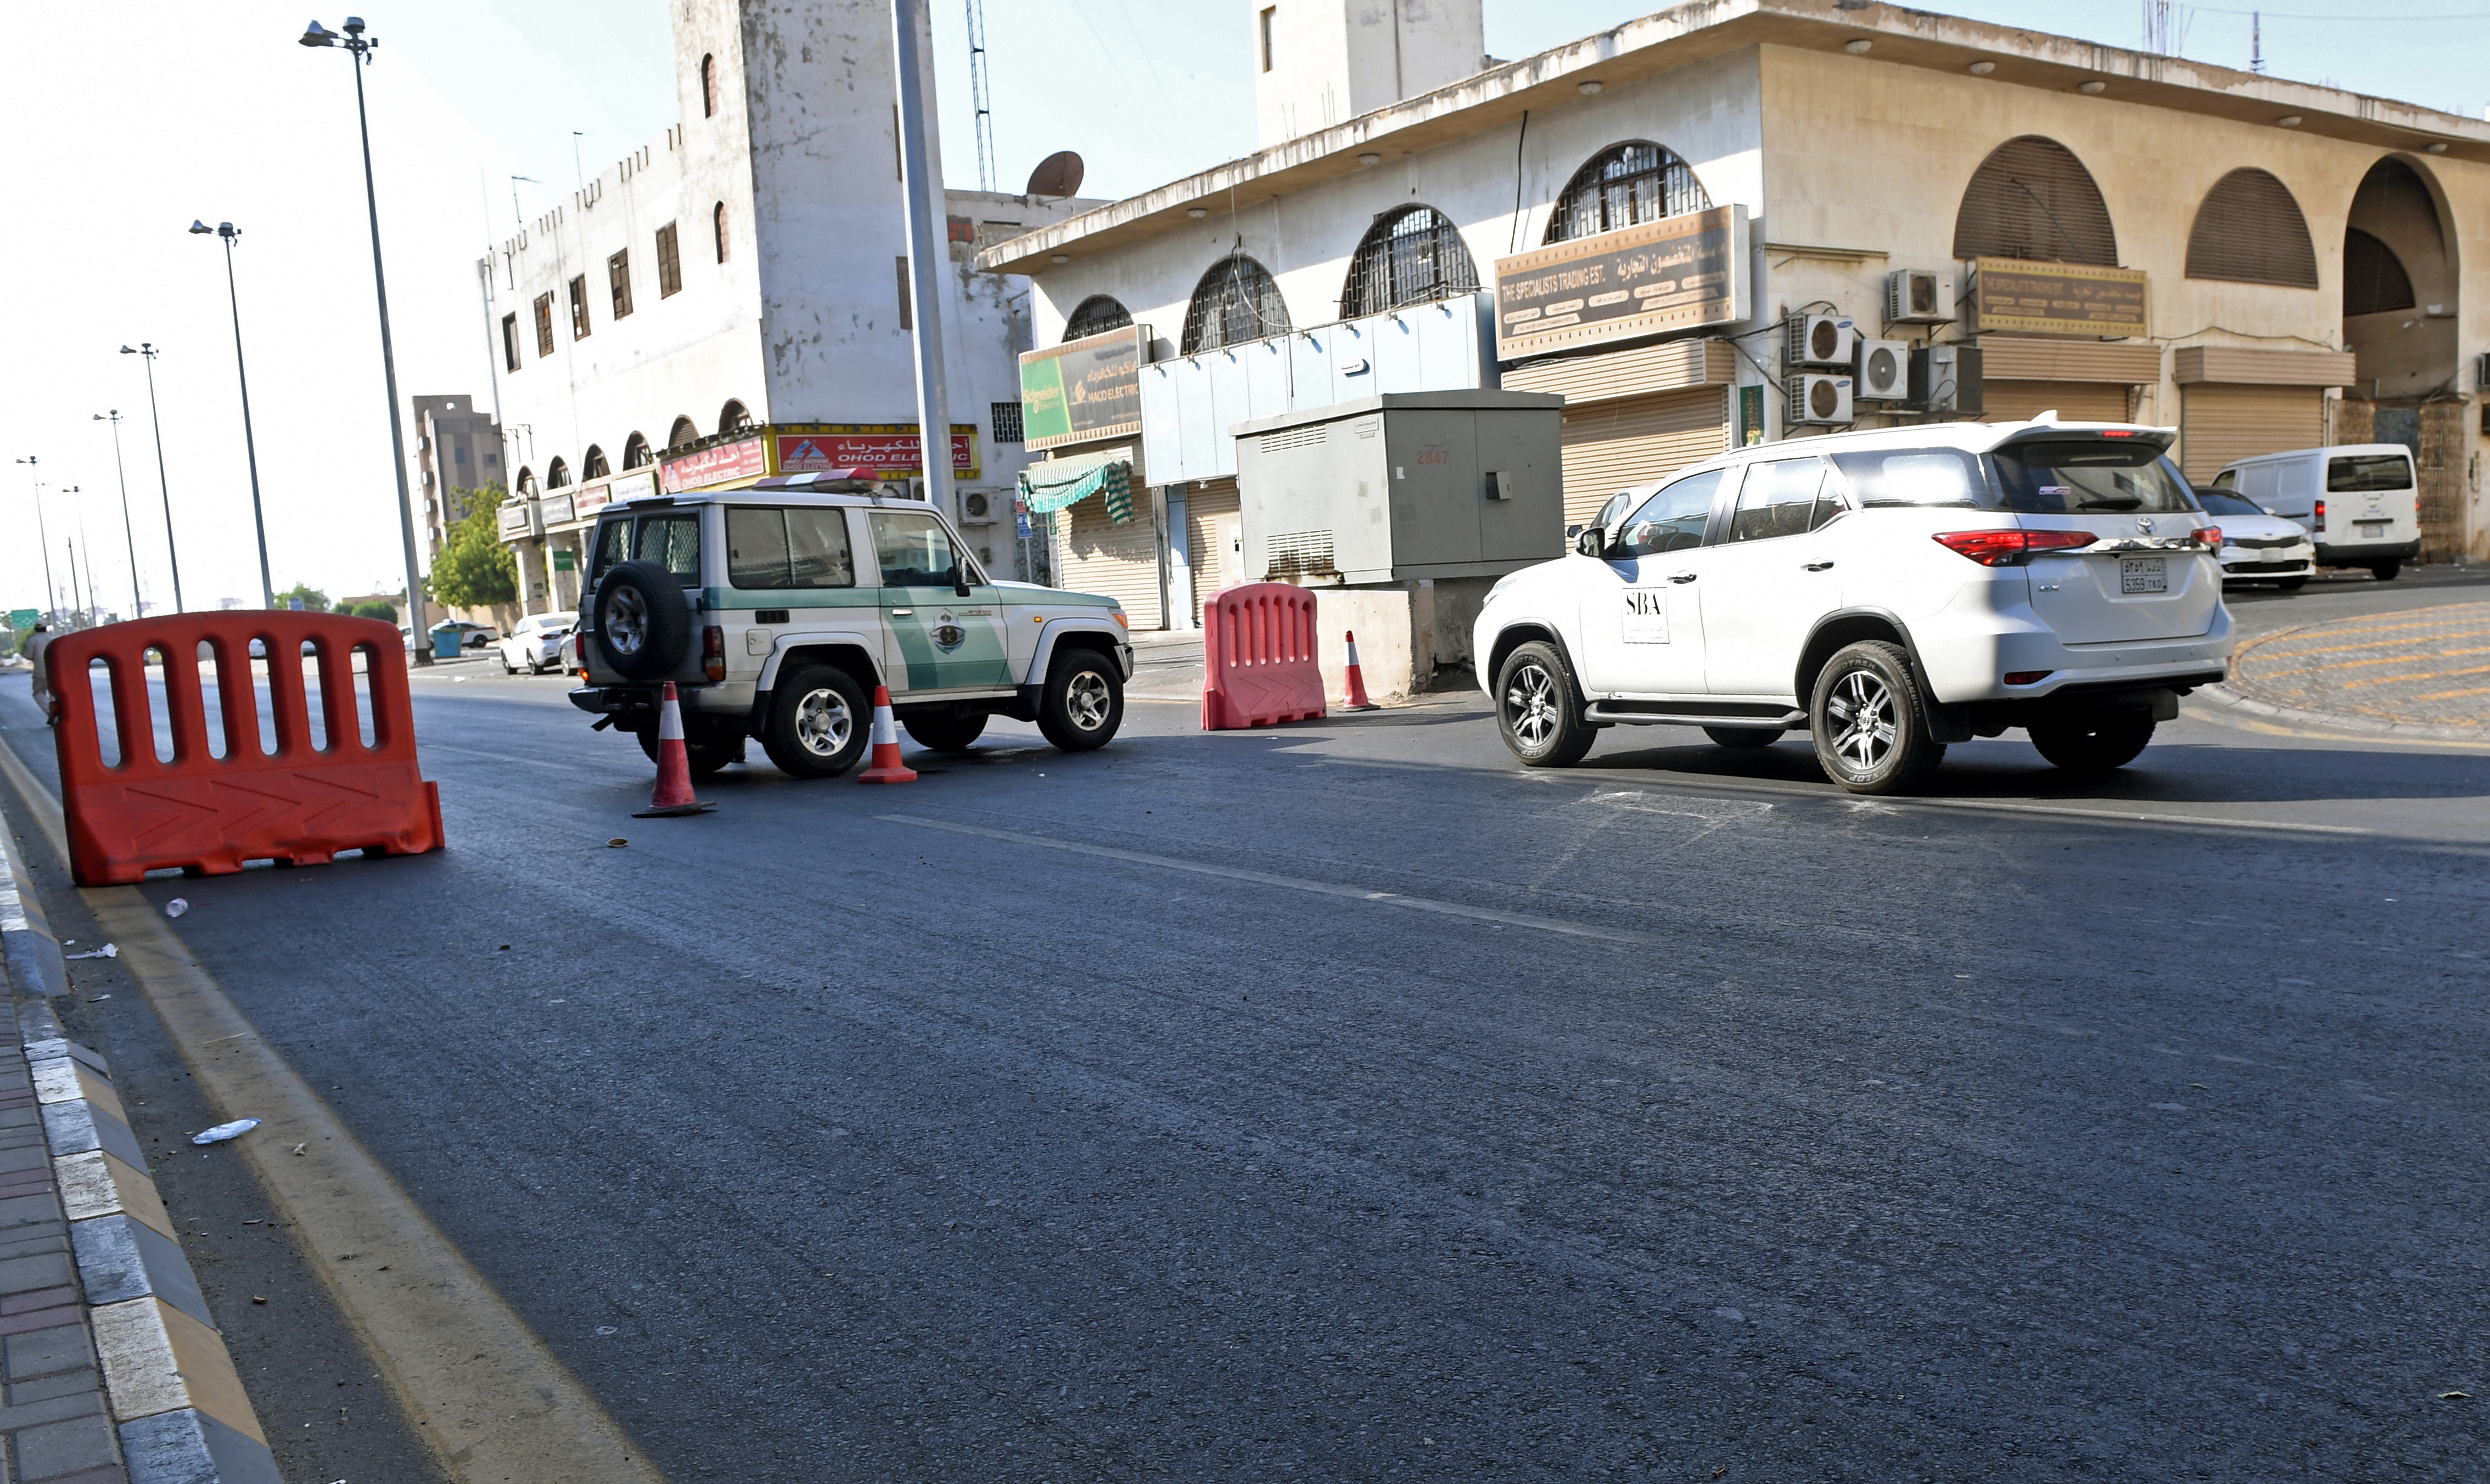 La policía saudí cierra una calle que conduce a un cementerio no musulmán en la ciudad saudí de Jeddah, donde una bomba golpeó una conmemoración de la Primera Guerra Mundial a la que asistieron diplomáticos europeos el 11 de noviembre de 2020, dejando a varias personas heridas en medio de la ira musulmana por las caricaturas francesas.  (Foto por - / AFP)